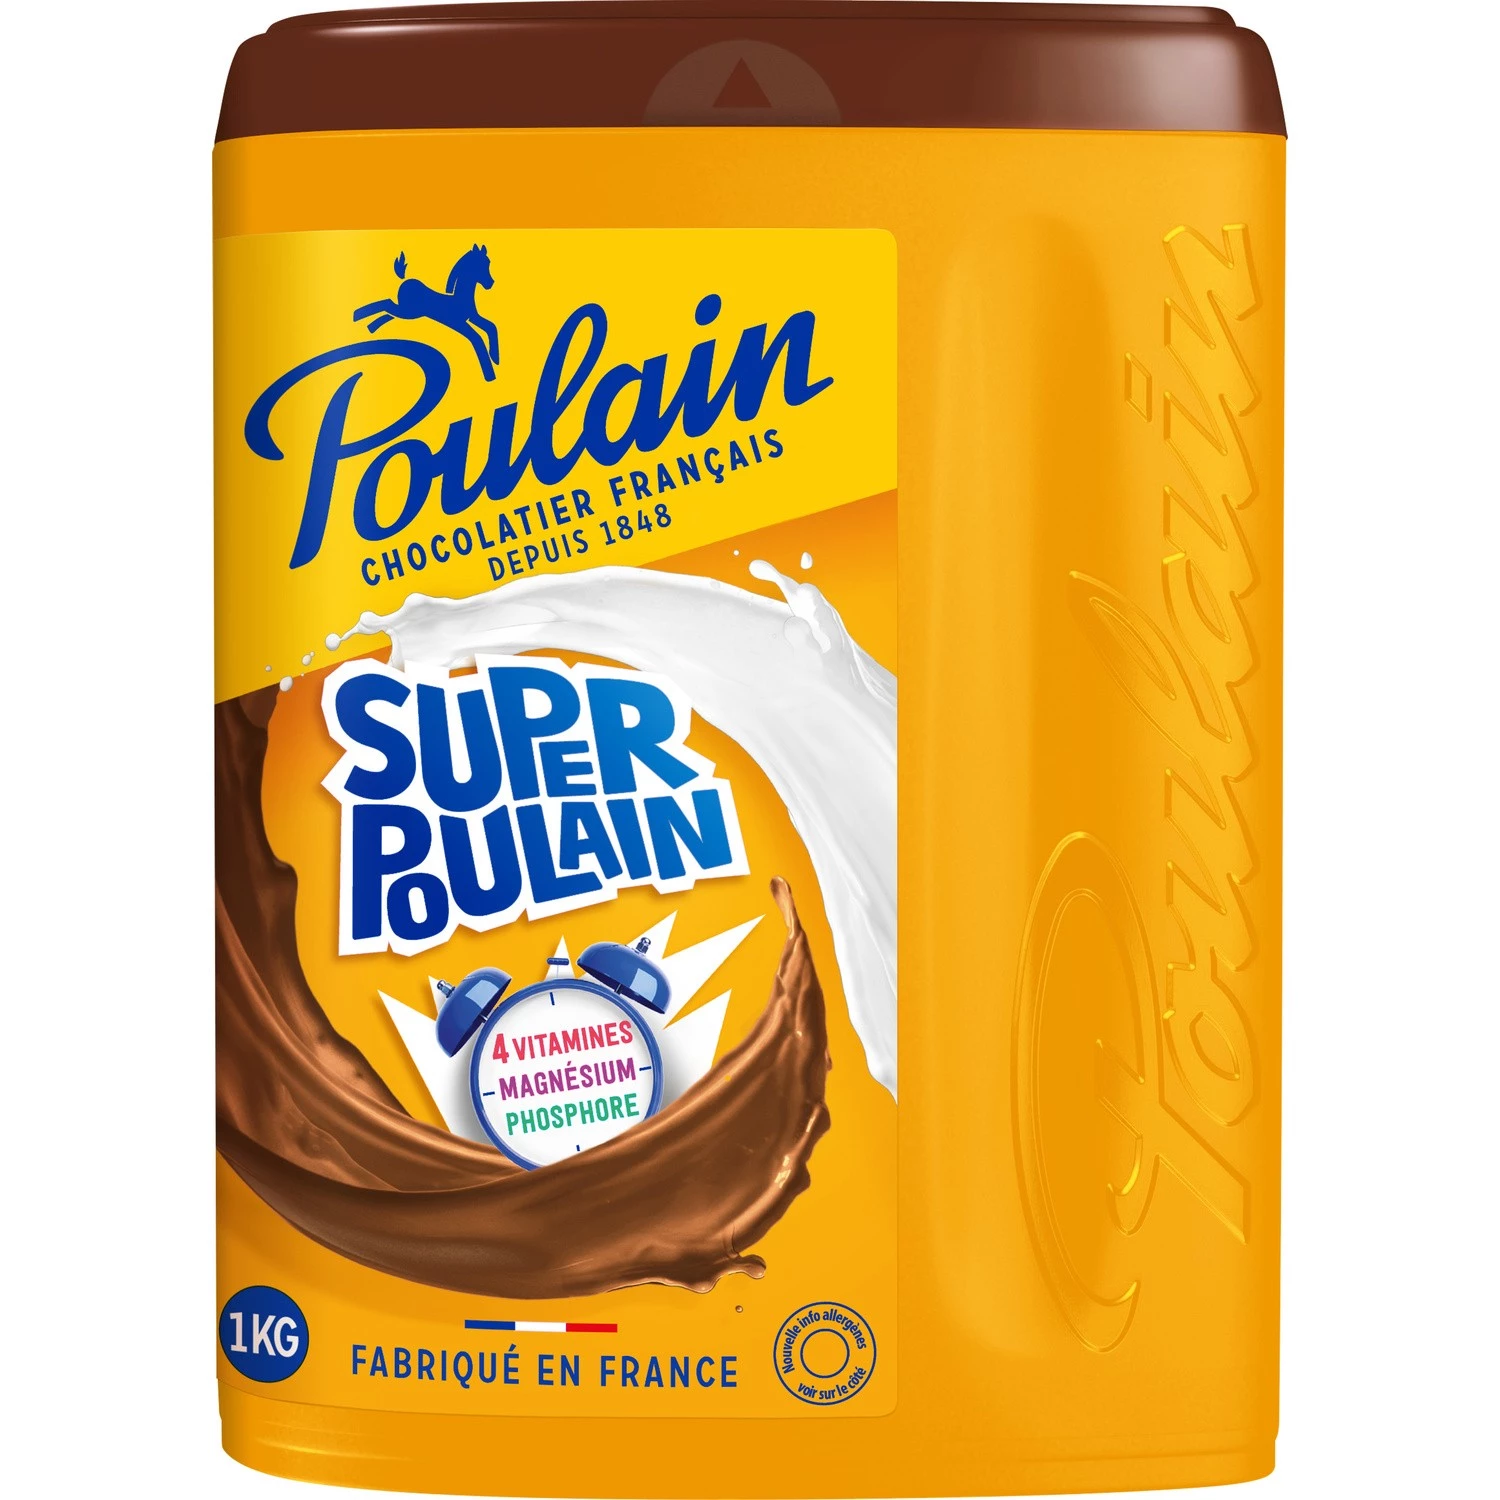 Super Poulain Schokoladenpulver 1kg - POULAIN